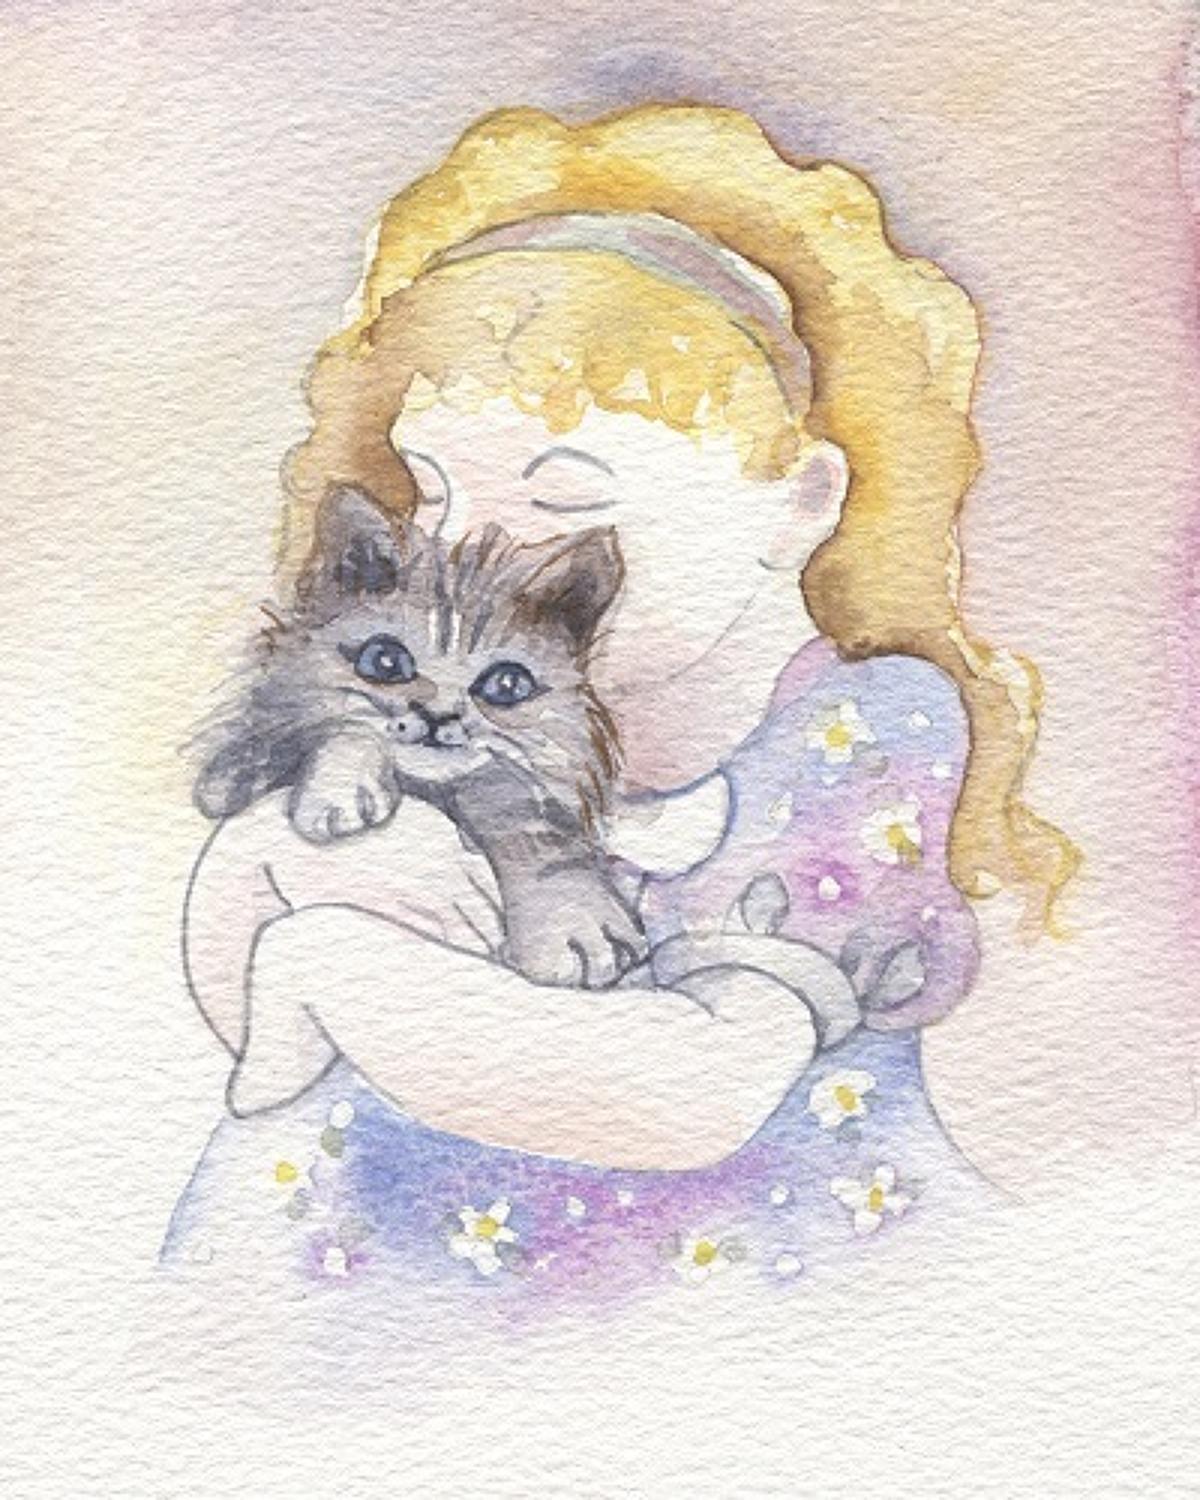 Little girl with kitten